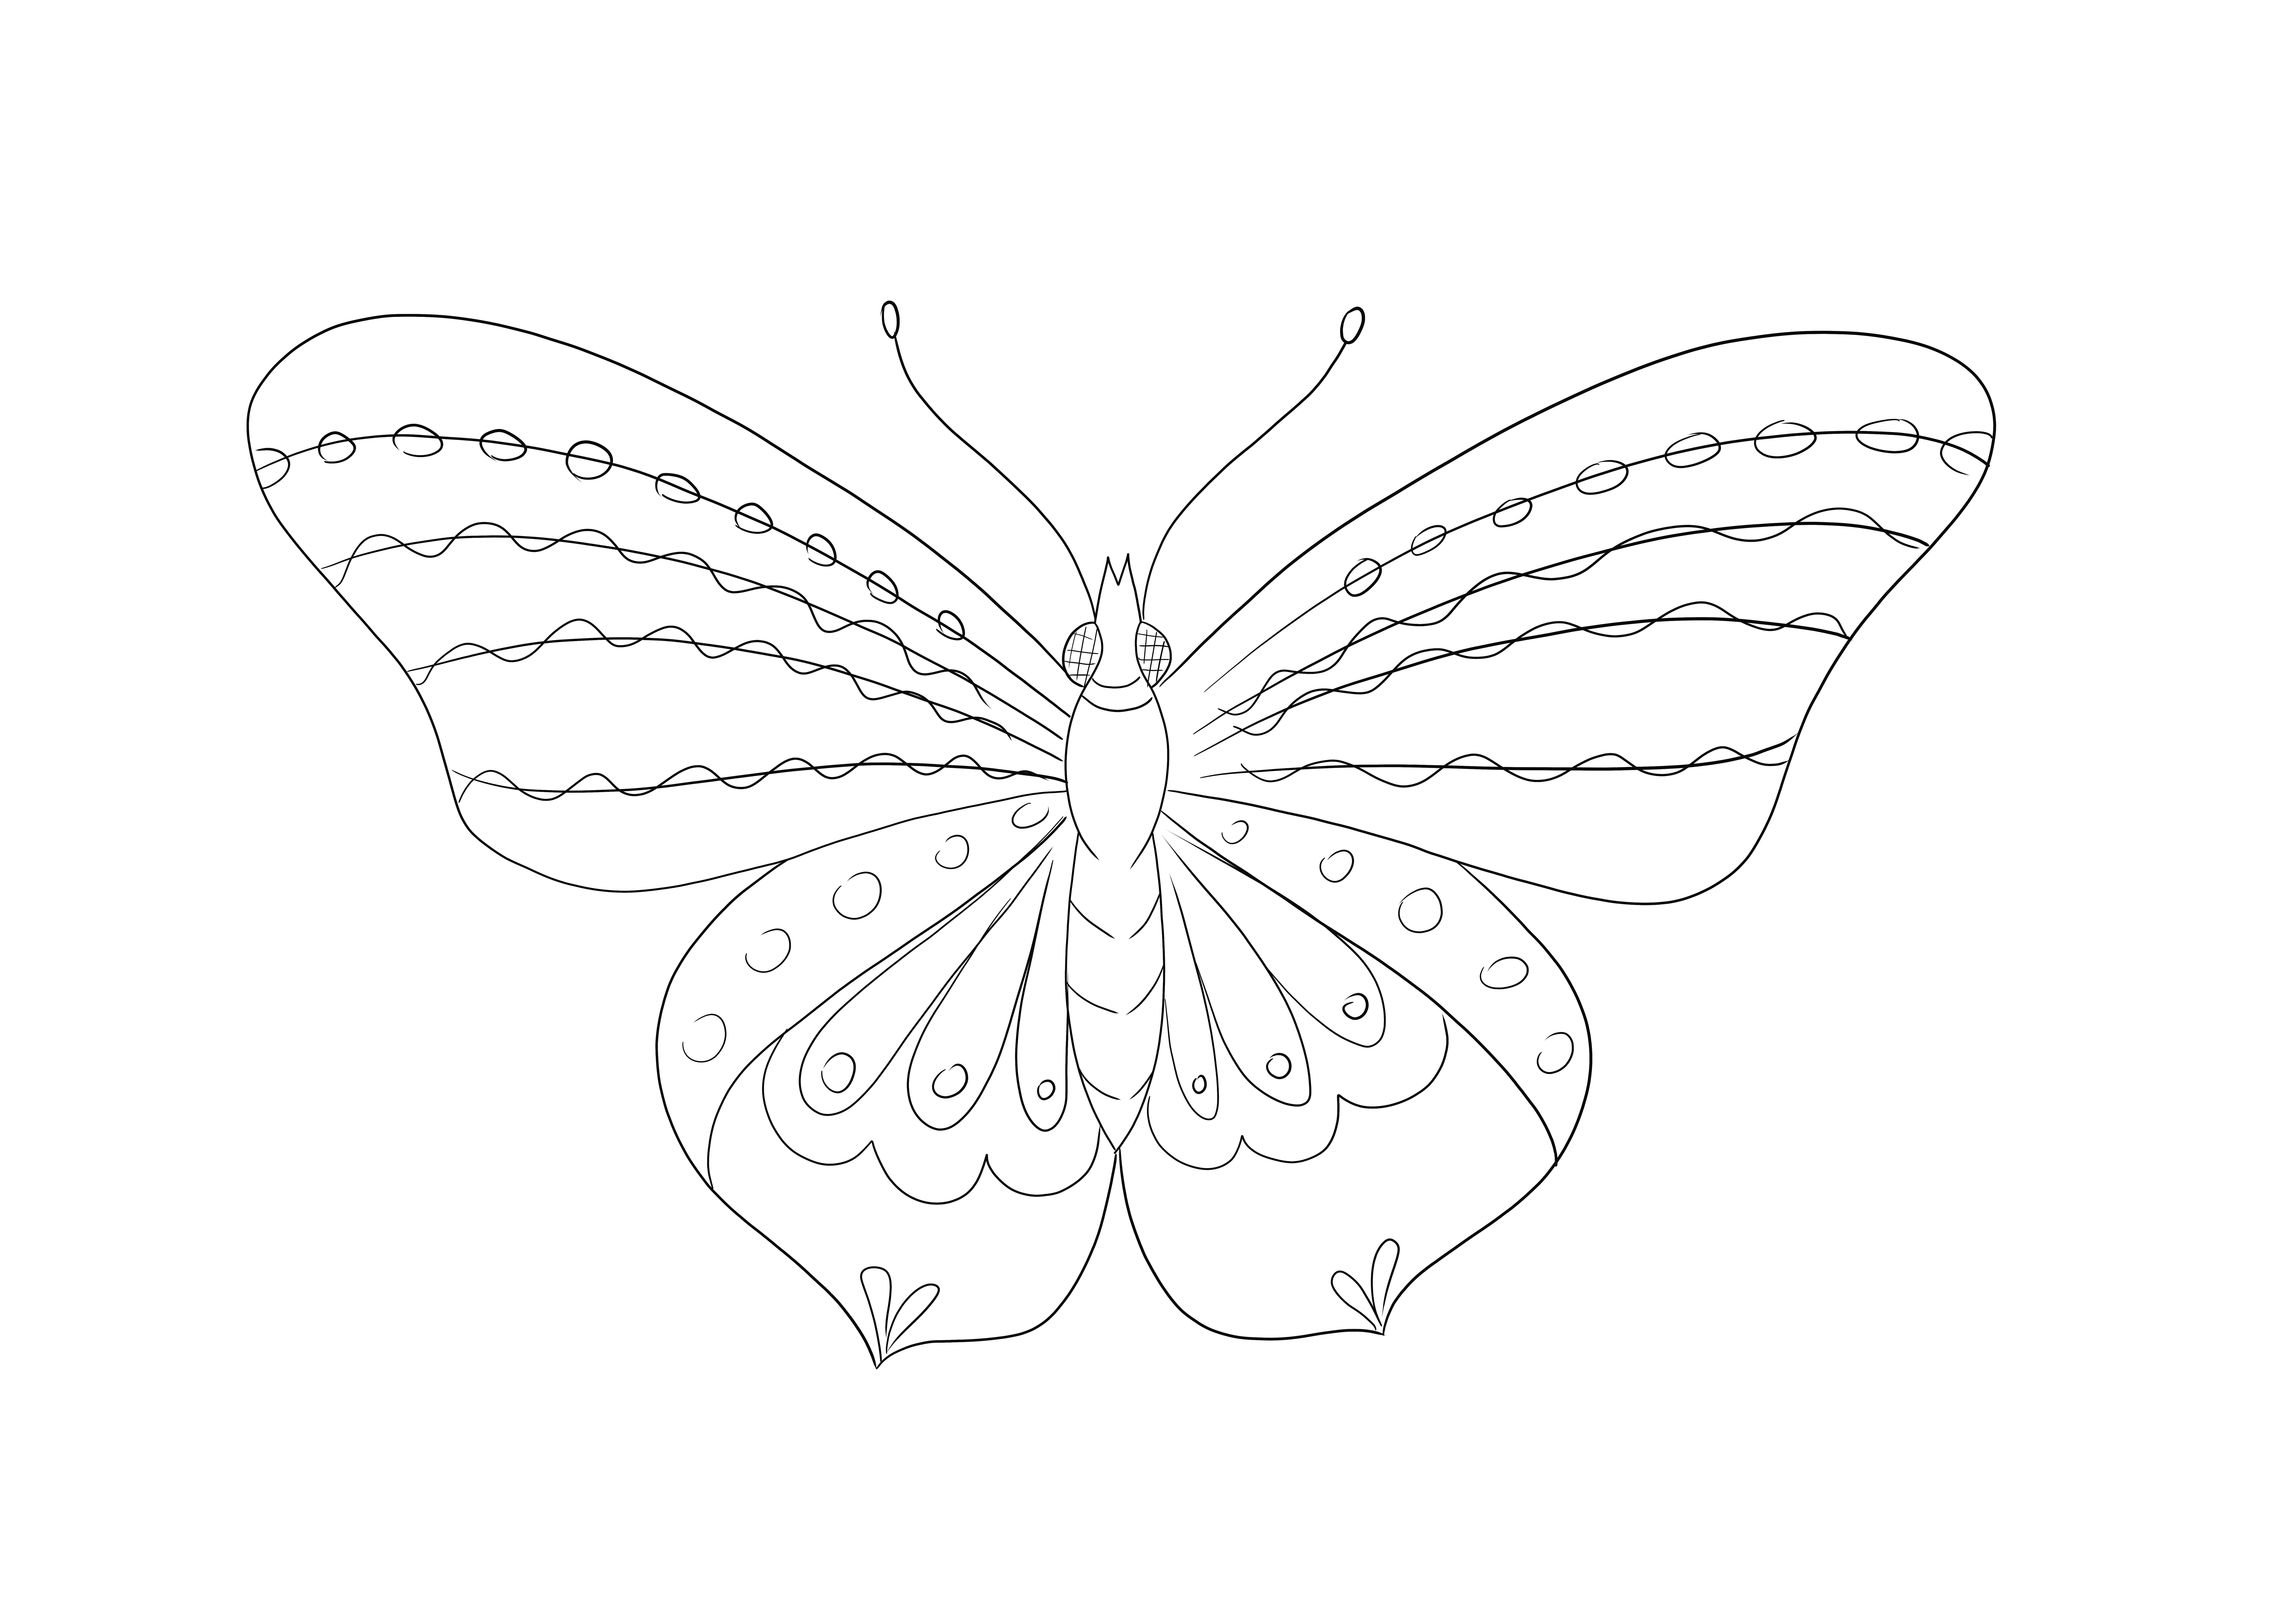 Łatwe linie do kolorowania pięknego motyla do pobrania za darmo